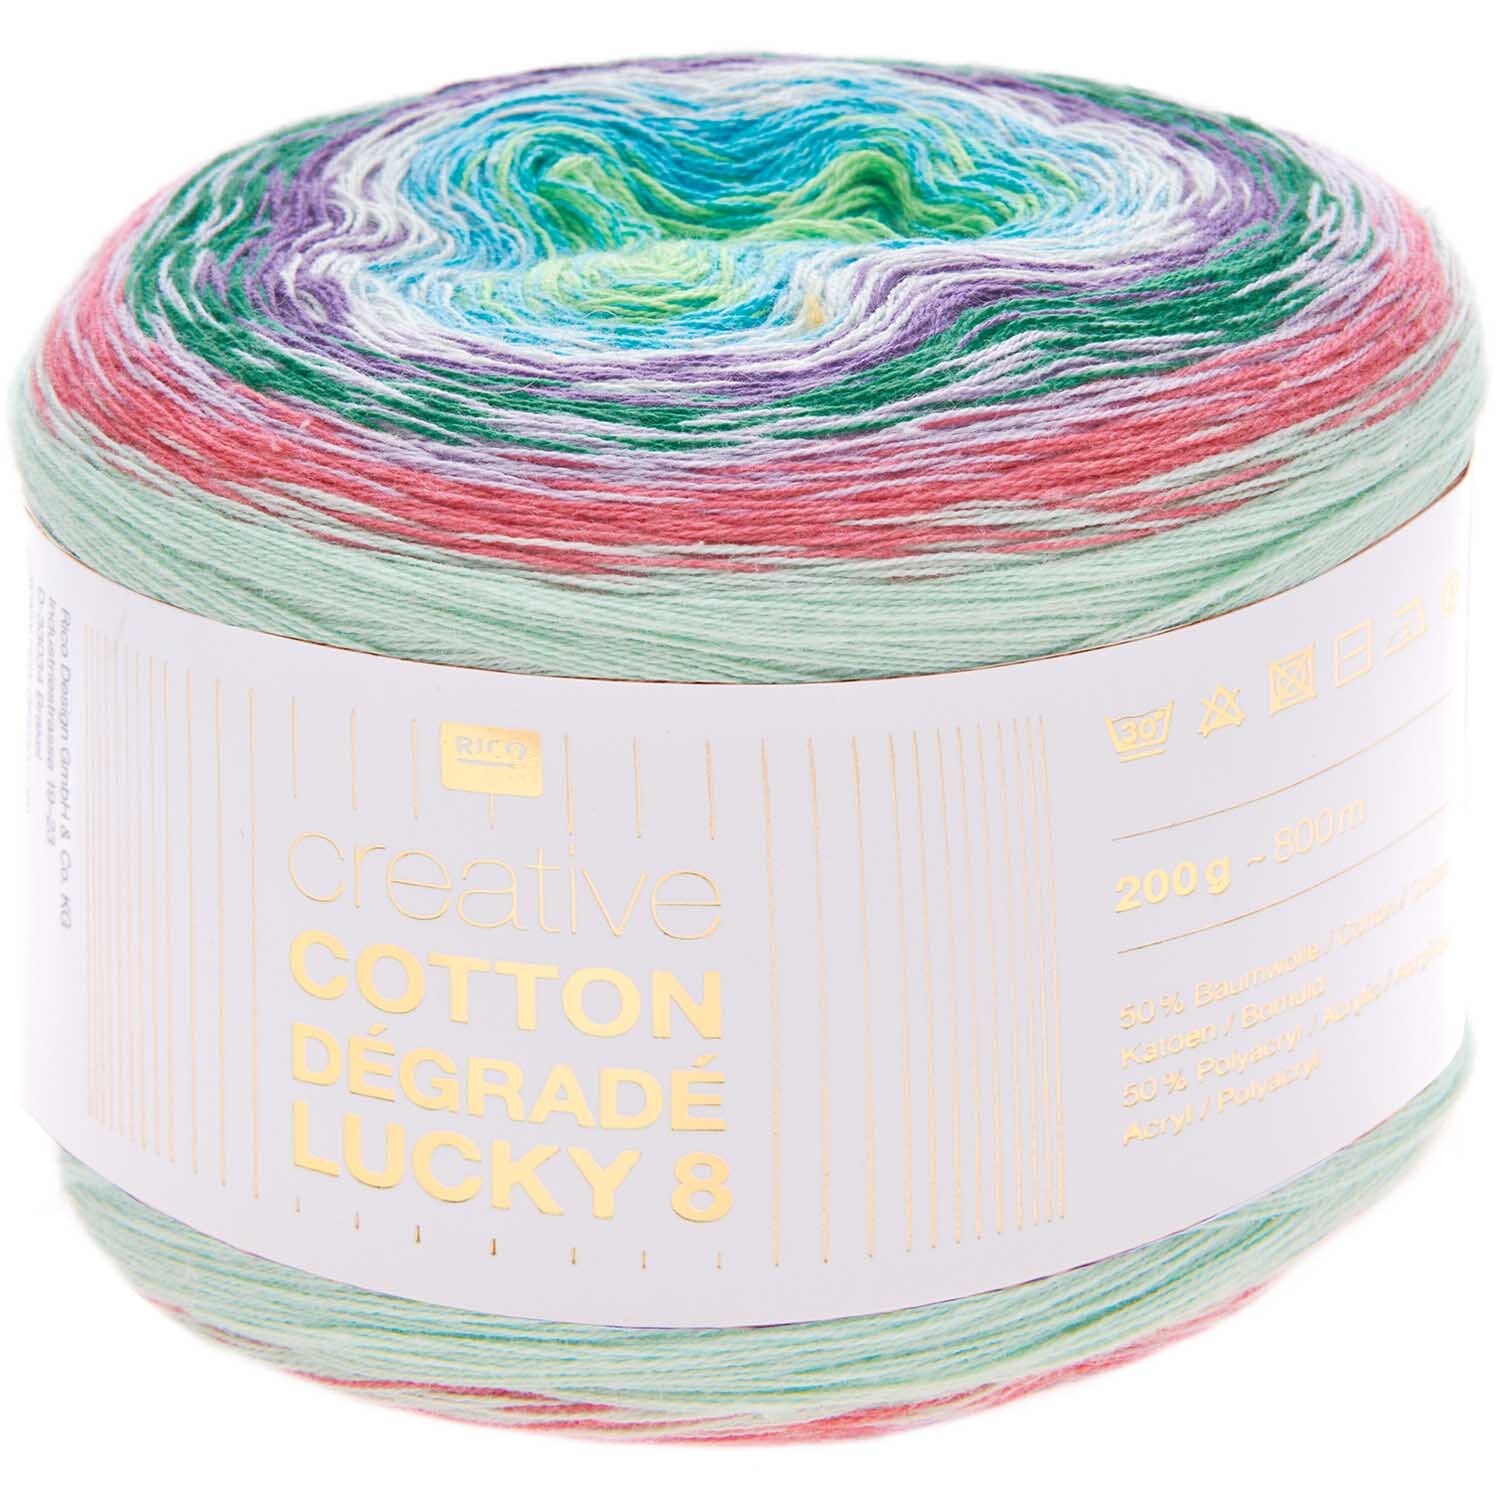 Creative Cotton Dégradé Lucky 8